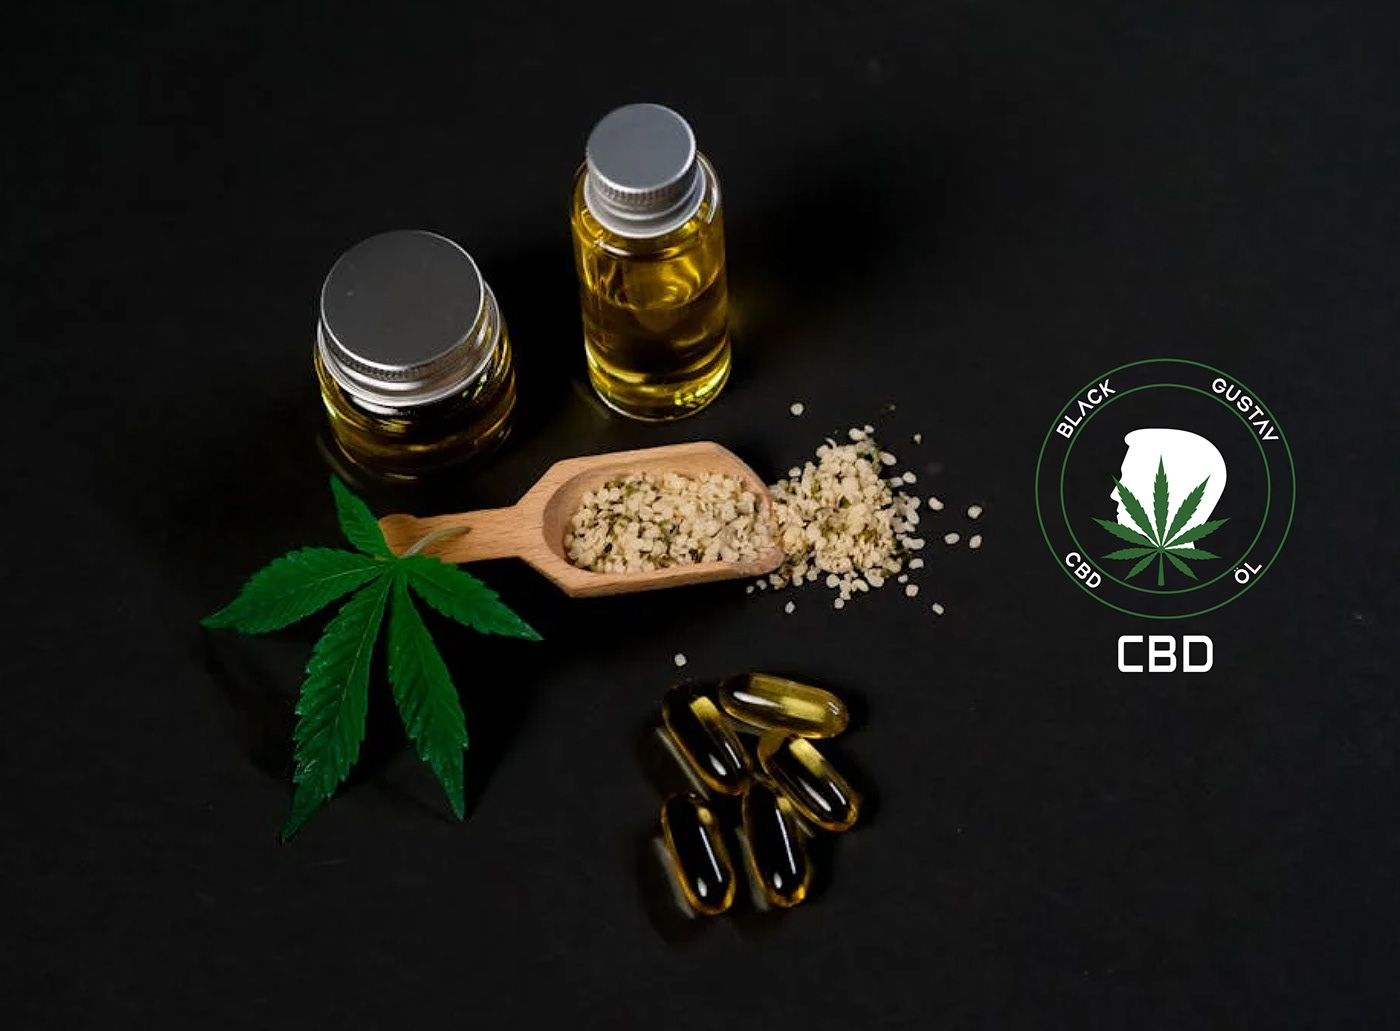 logo logos Logo Design CBD cannabis branding  brand identity Brand Design visual identity Custom